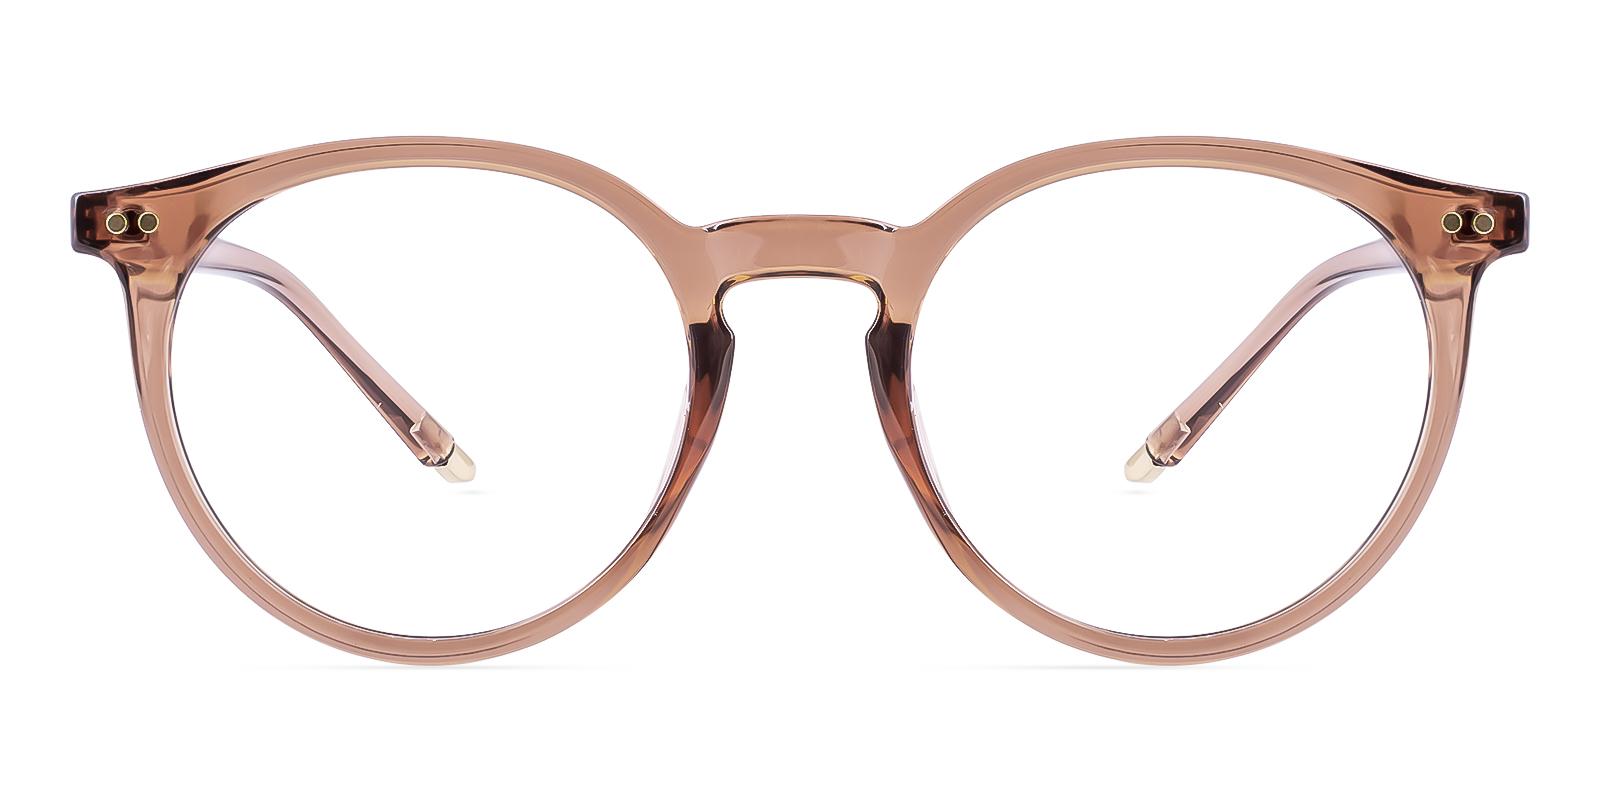 Gunety Brown Plastic Eyeglasses , UniversalBridgeFit Frames from ABBE Glasses